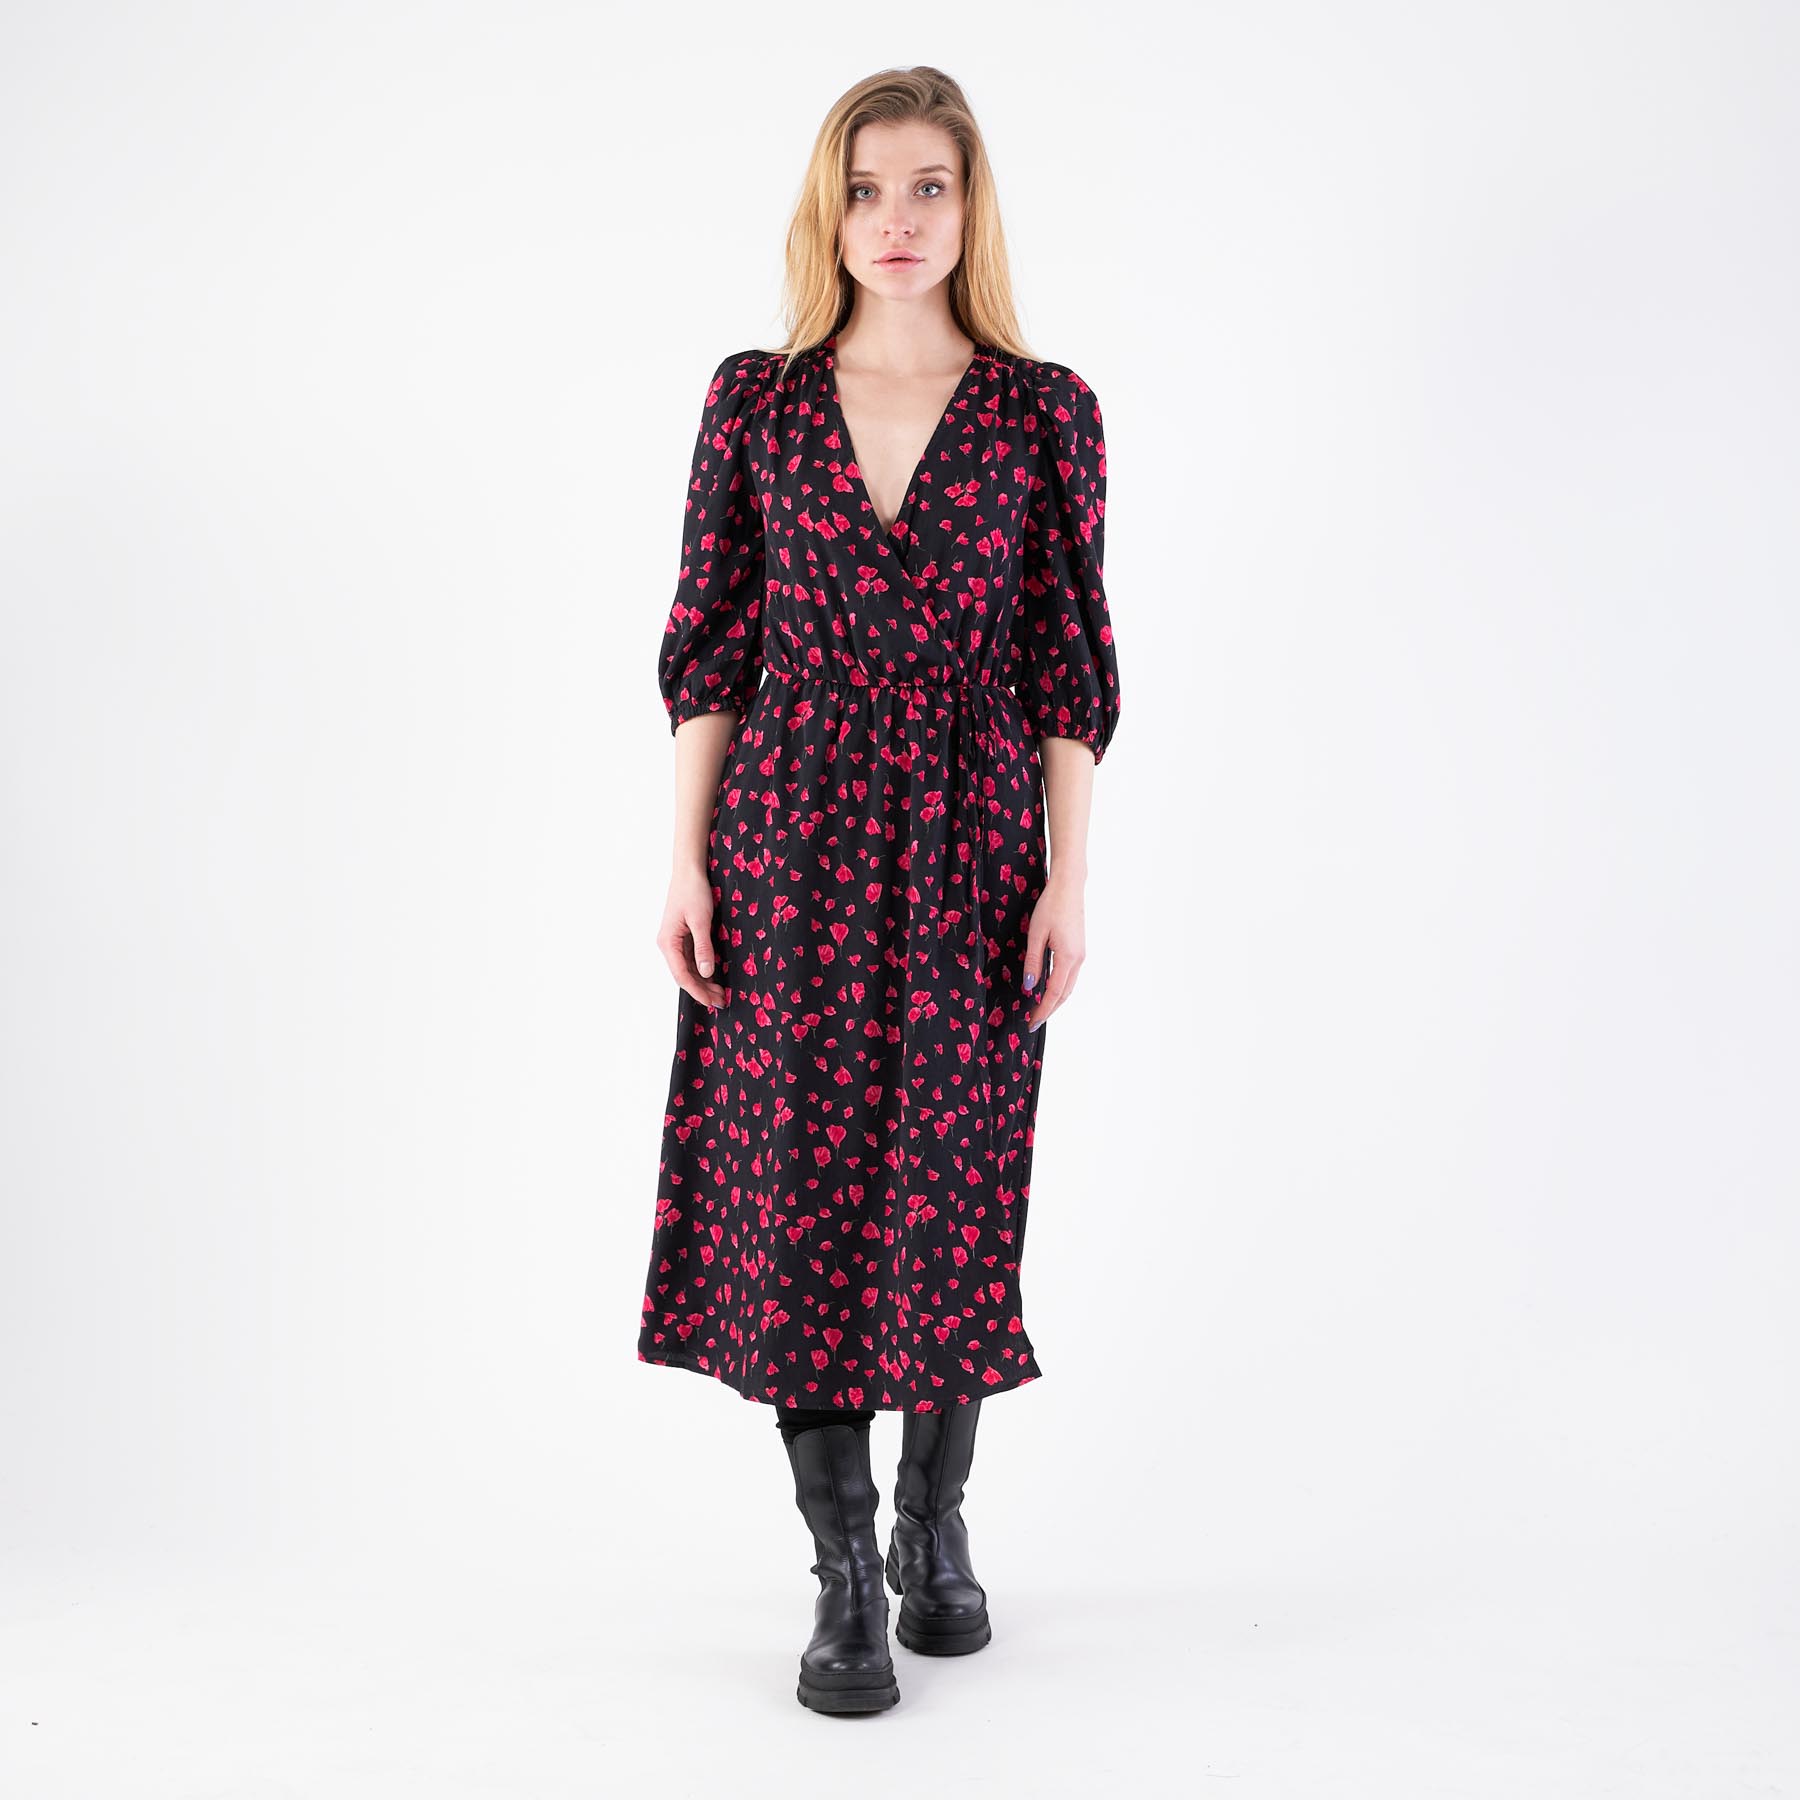 Pure friday – Purlotus print dress – Kjoler til hende – D/BLACK W. PINK FLOW – M